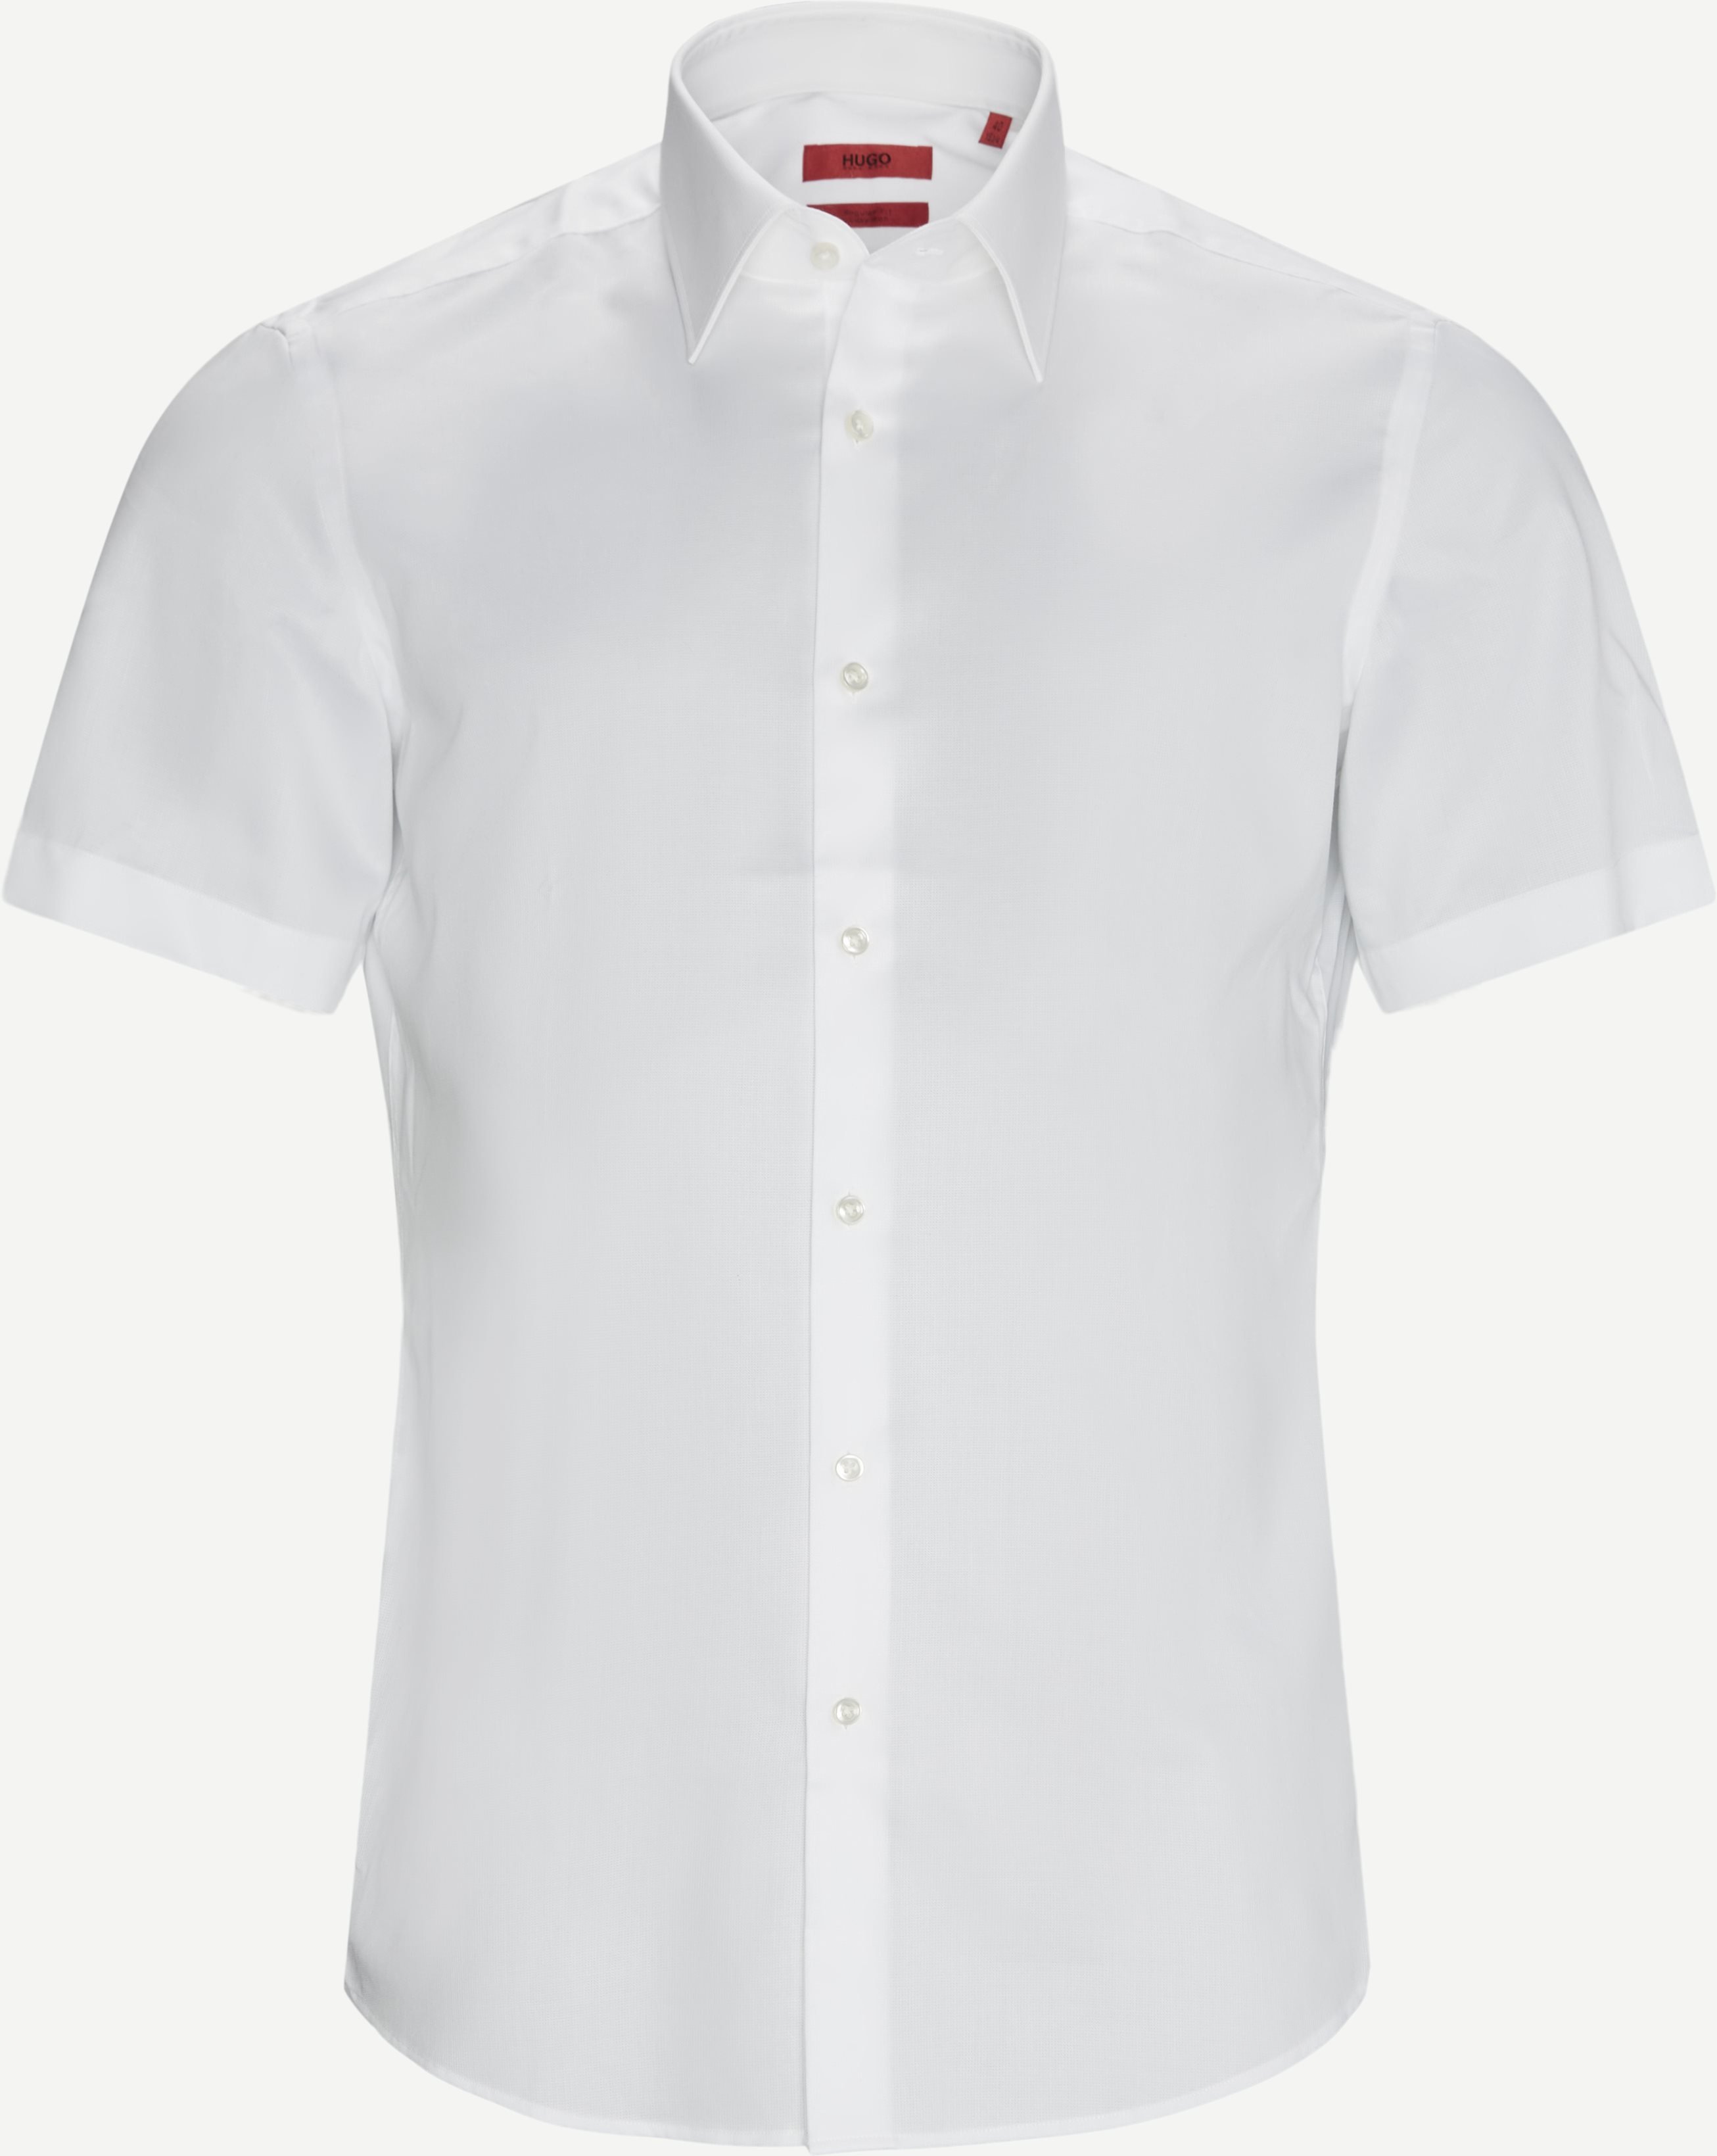 Venzino K / Æ skjorta - Kortärmade skjortor - Regular fit - Vit